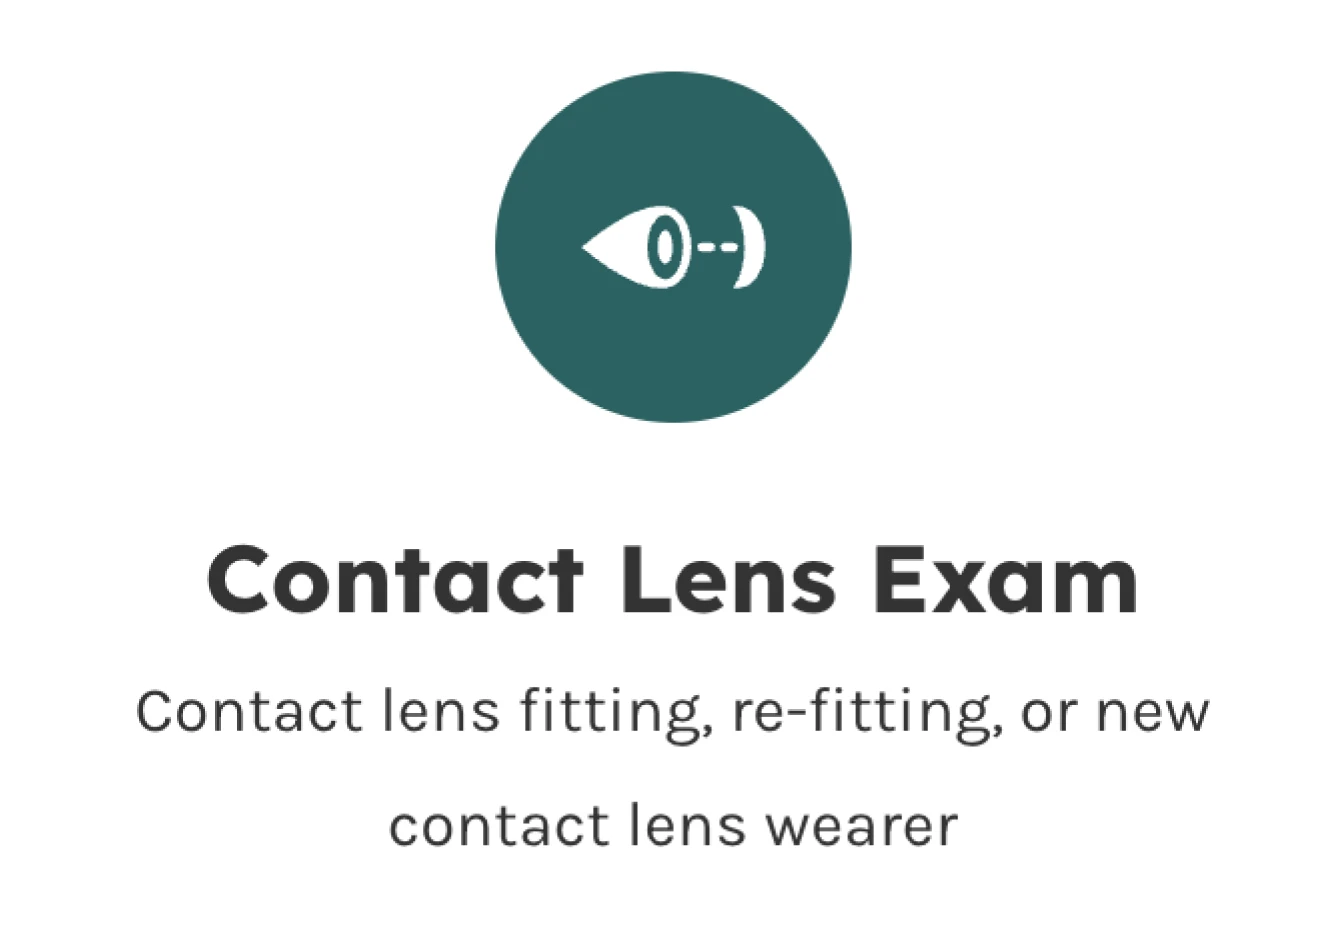 Contact Lens Exam